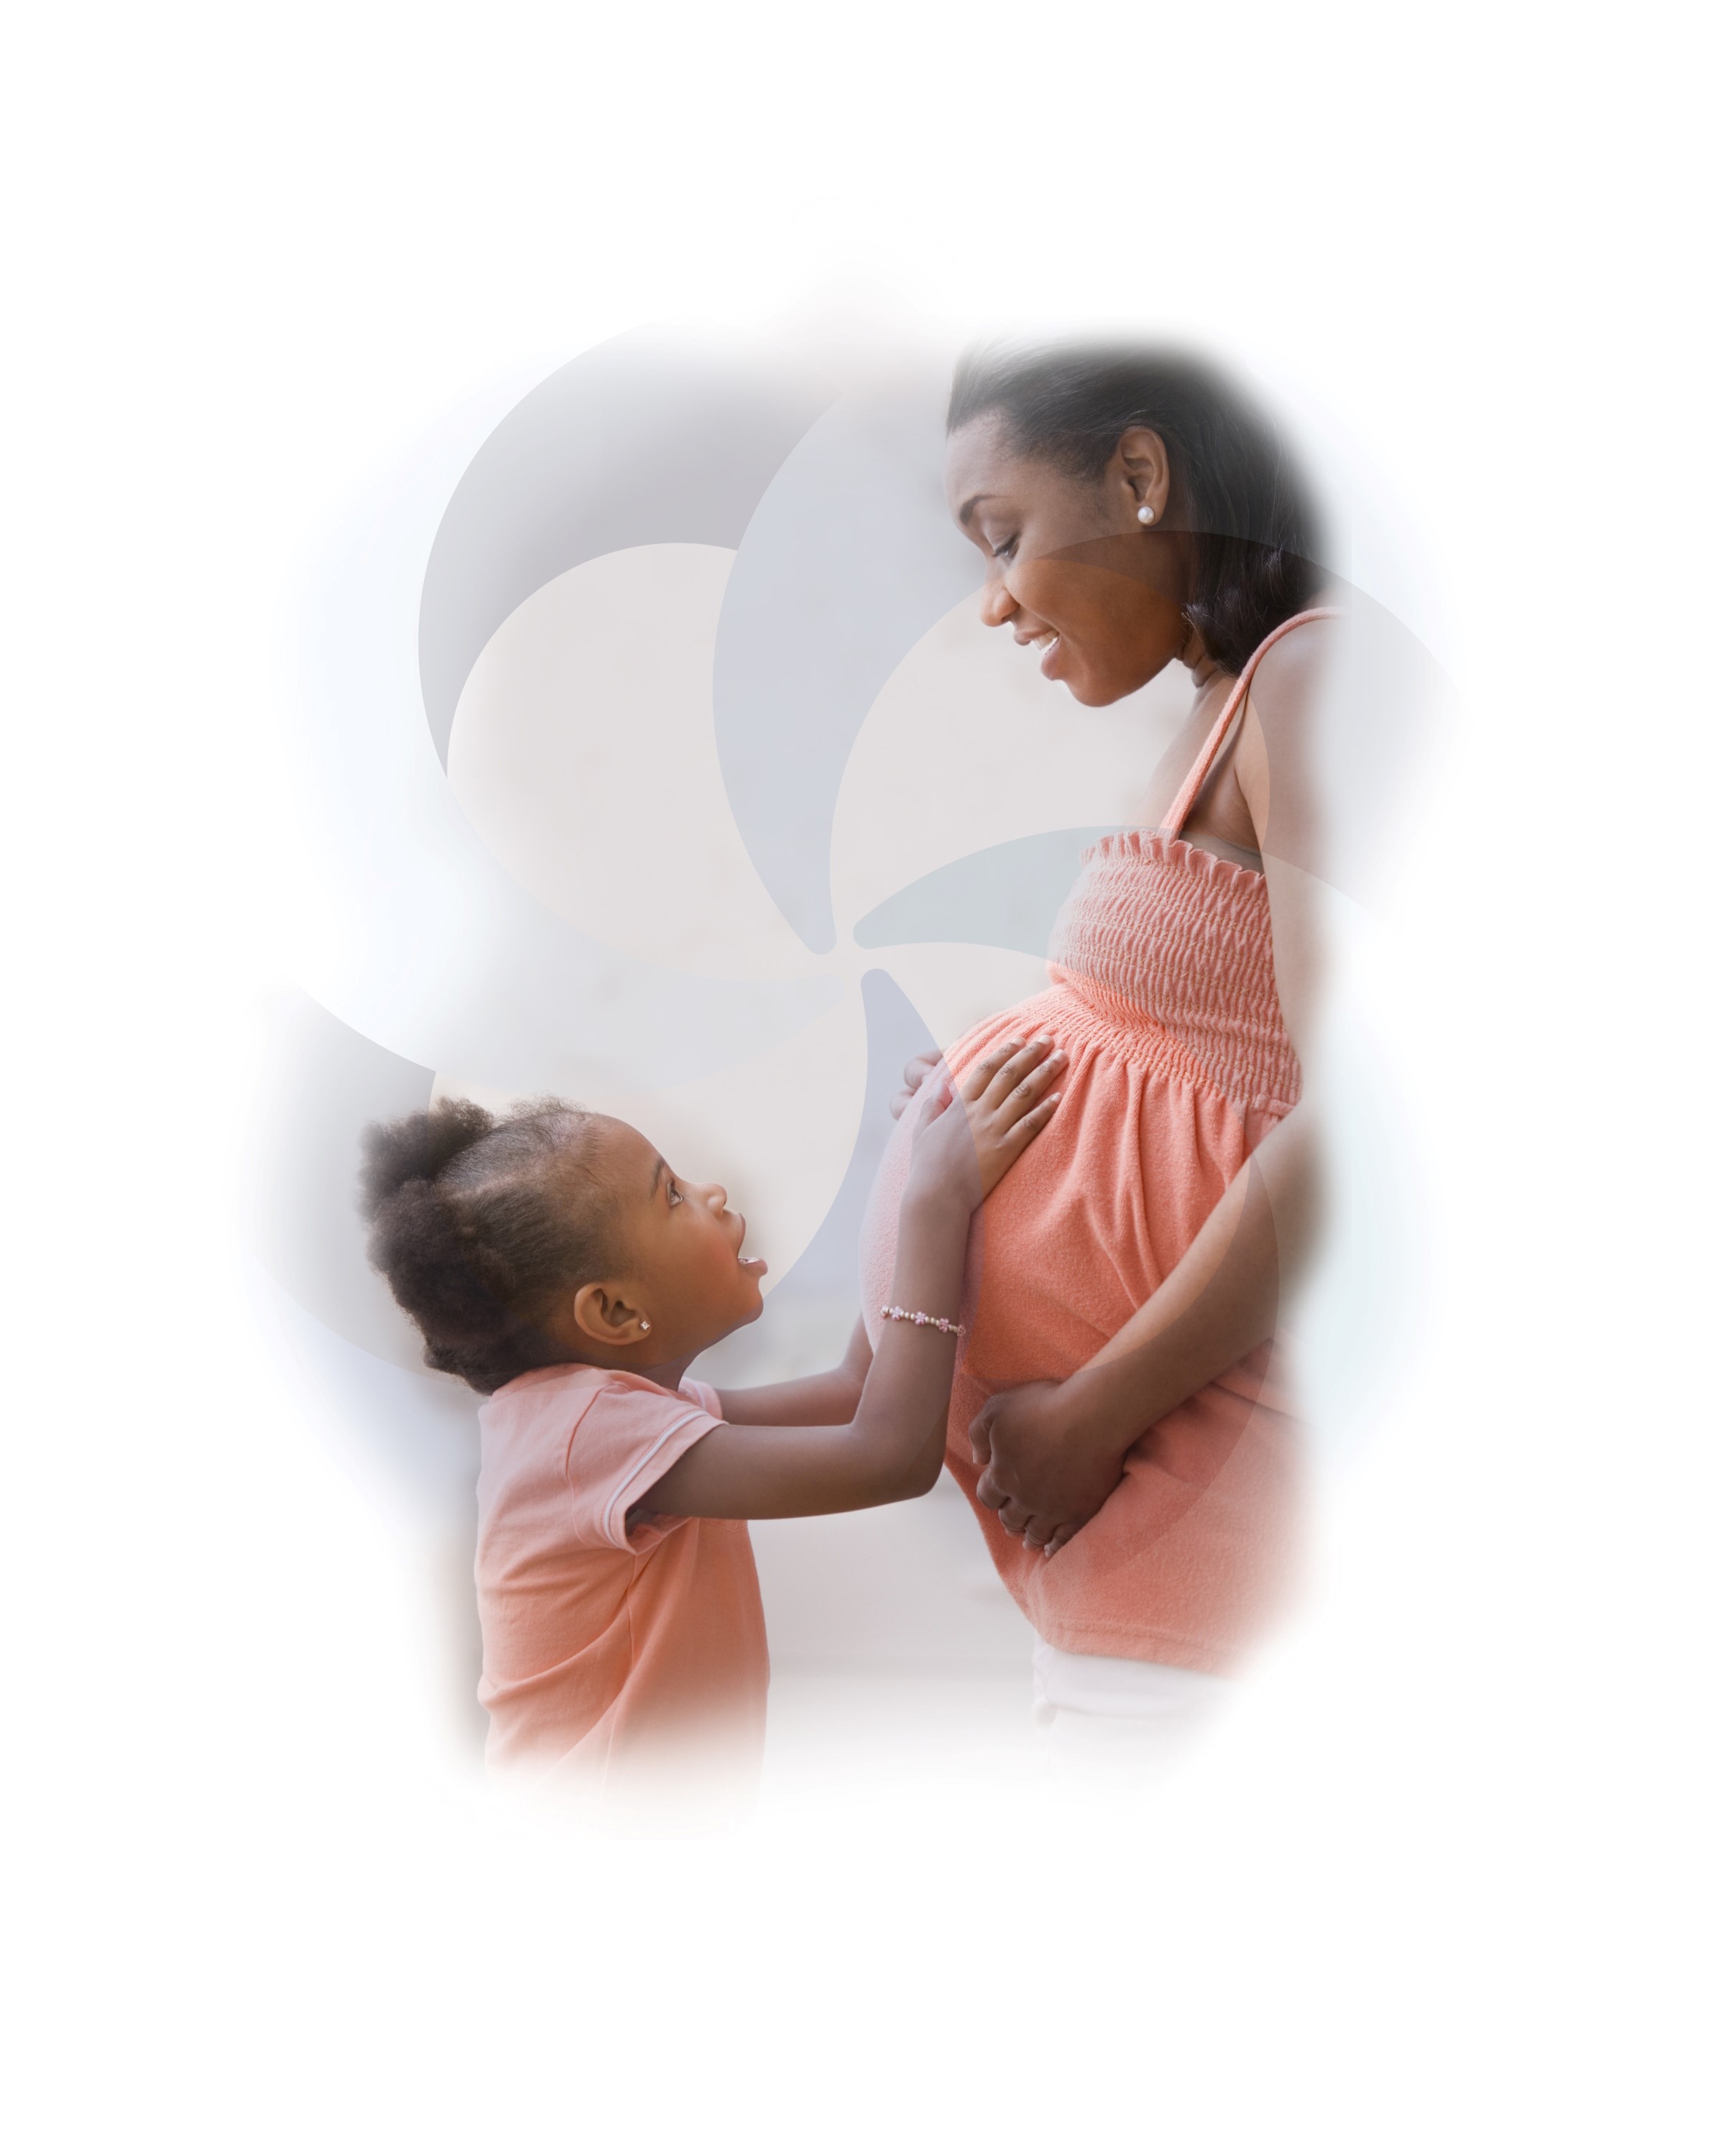 Maternal depression addressed sooner due to CCNC’s Pregnancy Medical Home program